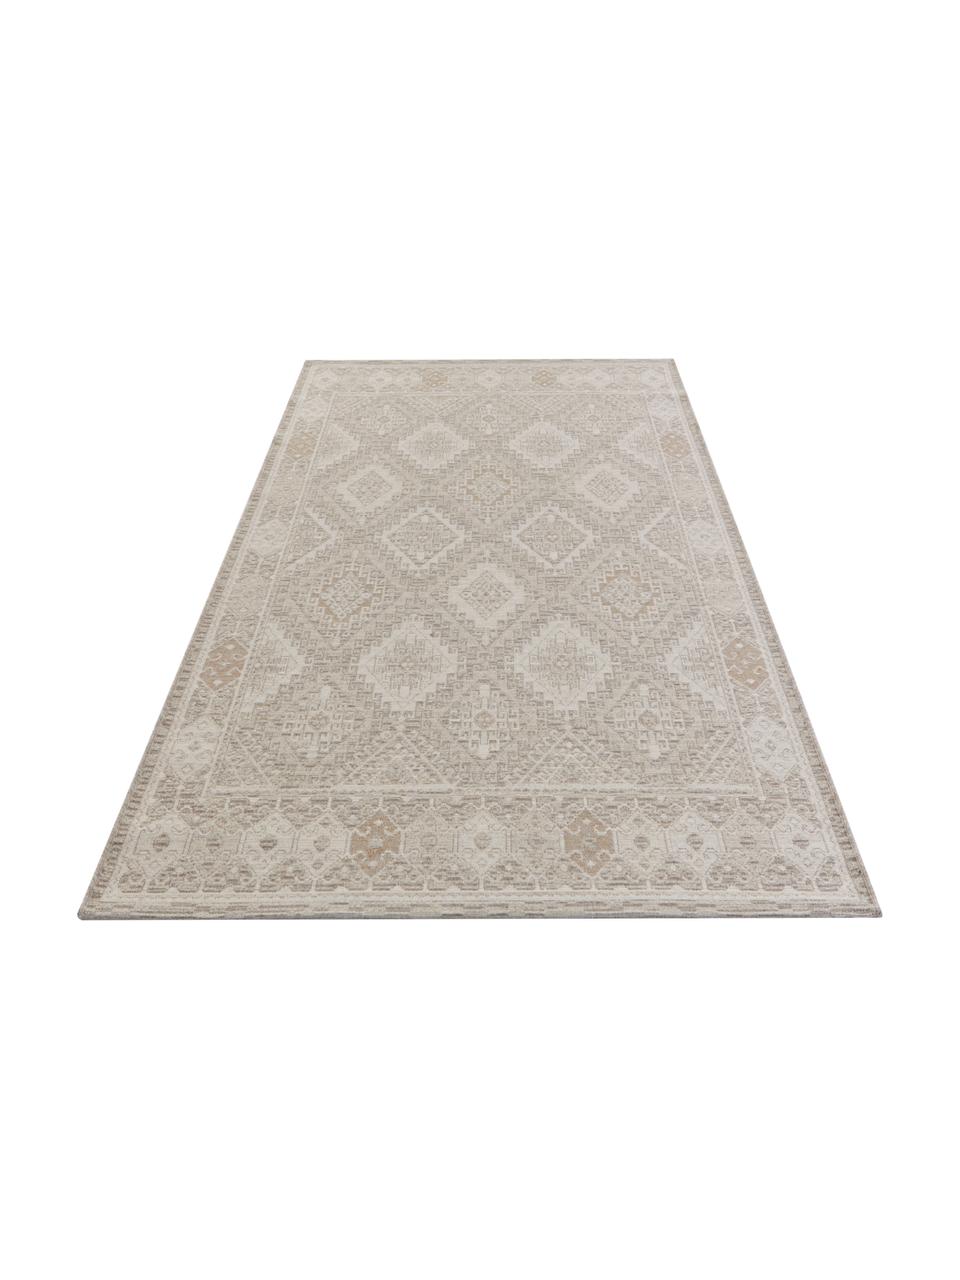 Teppich Lina mit Ethnomuster in Beige/Grau, 48% Jute, 43% Wolle, 9% Viskose, Beige, Grau, B 160 x L 230 cm (Größe M)